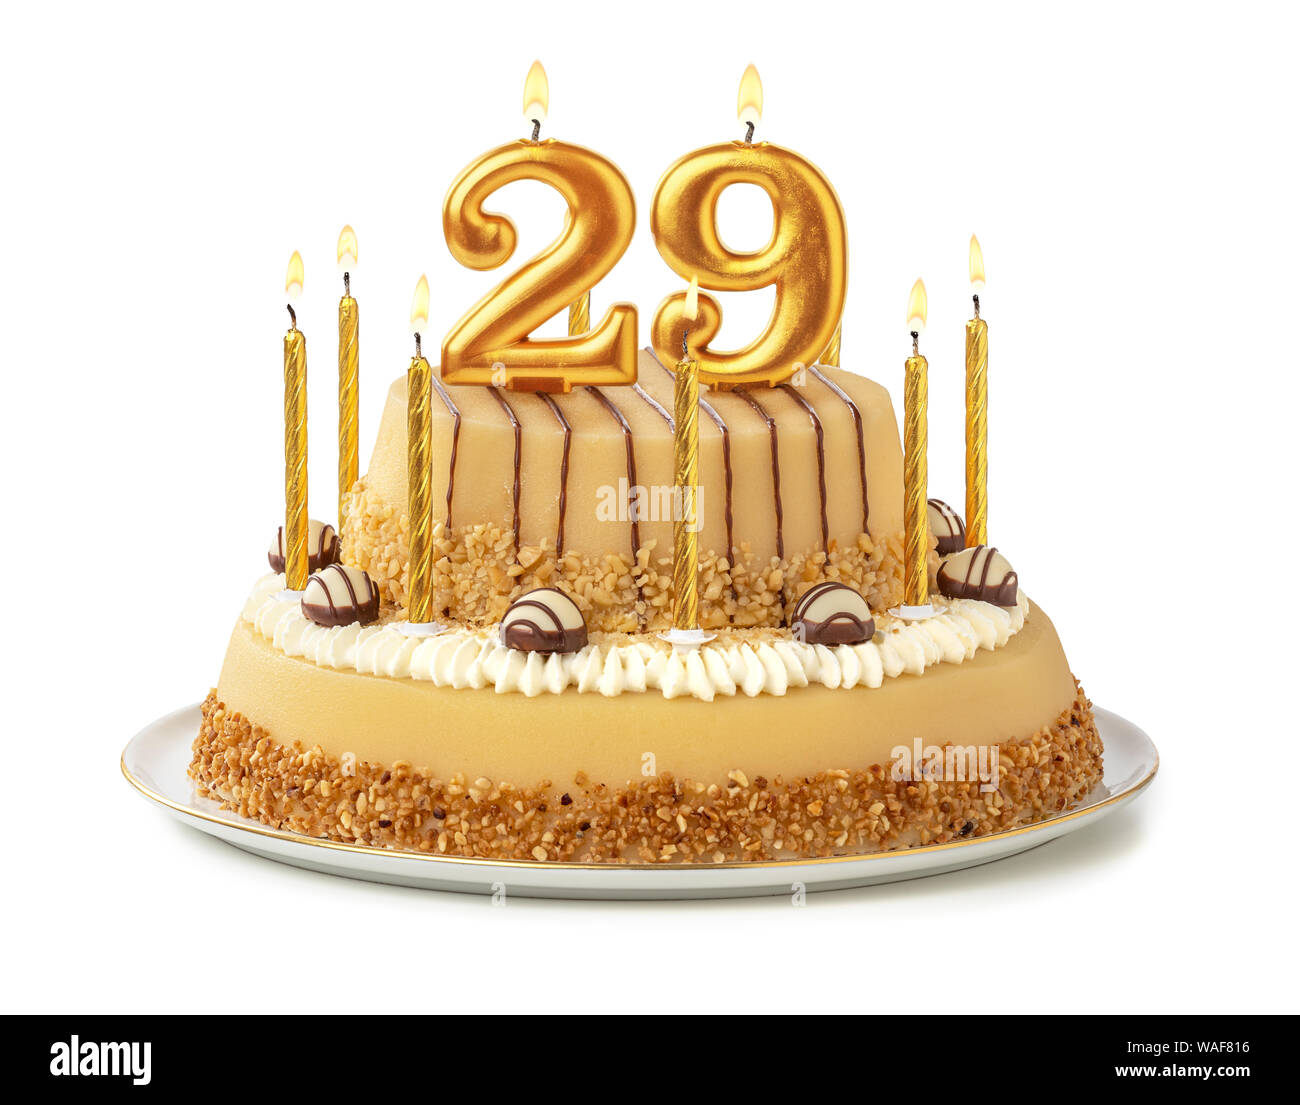 Gâteau de fête avec des bougies d'or - Numéro 29 Photo Stock - Alamy